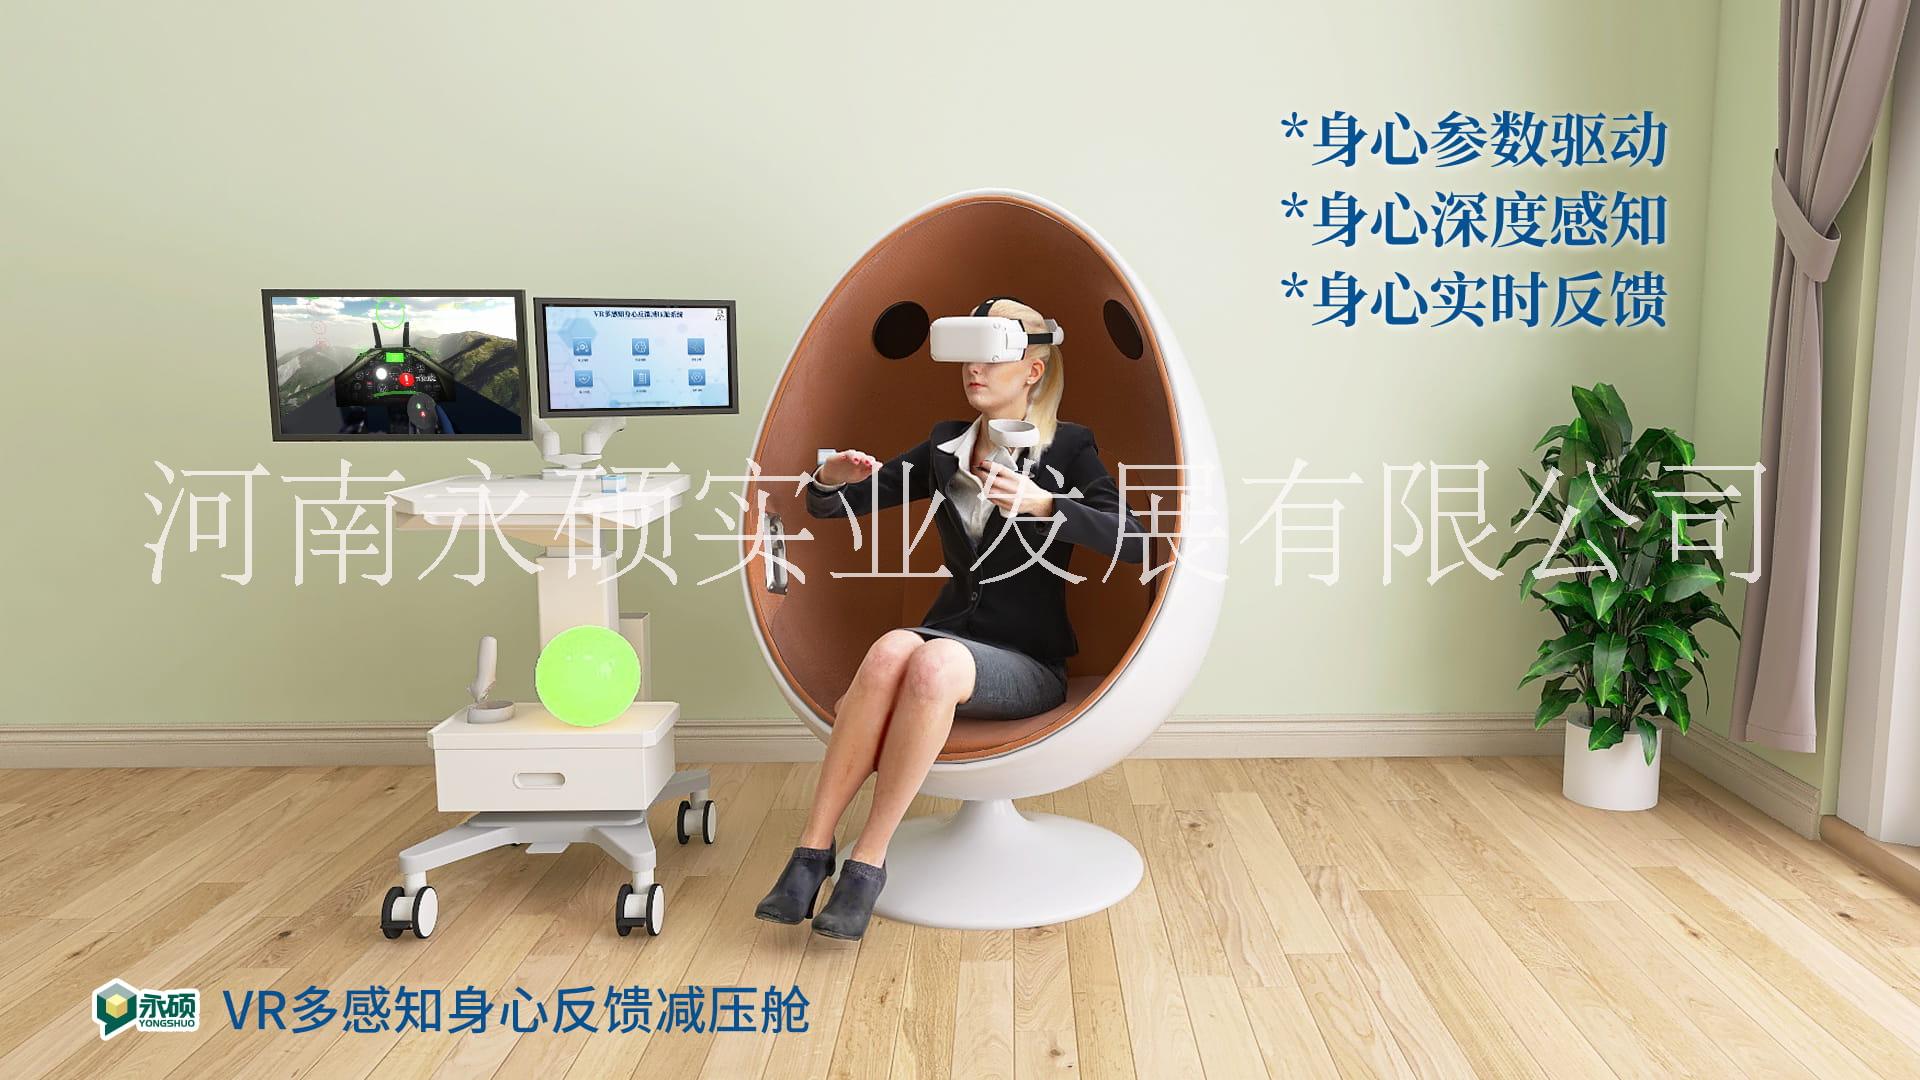 VR多感知身心反馈减压舱--虚拟现实3D，全景感知，身心反馈训练